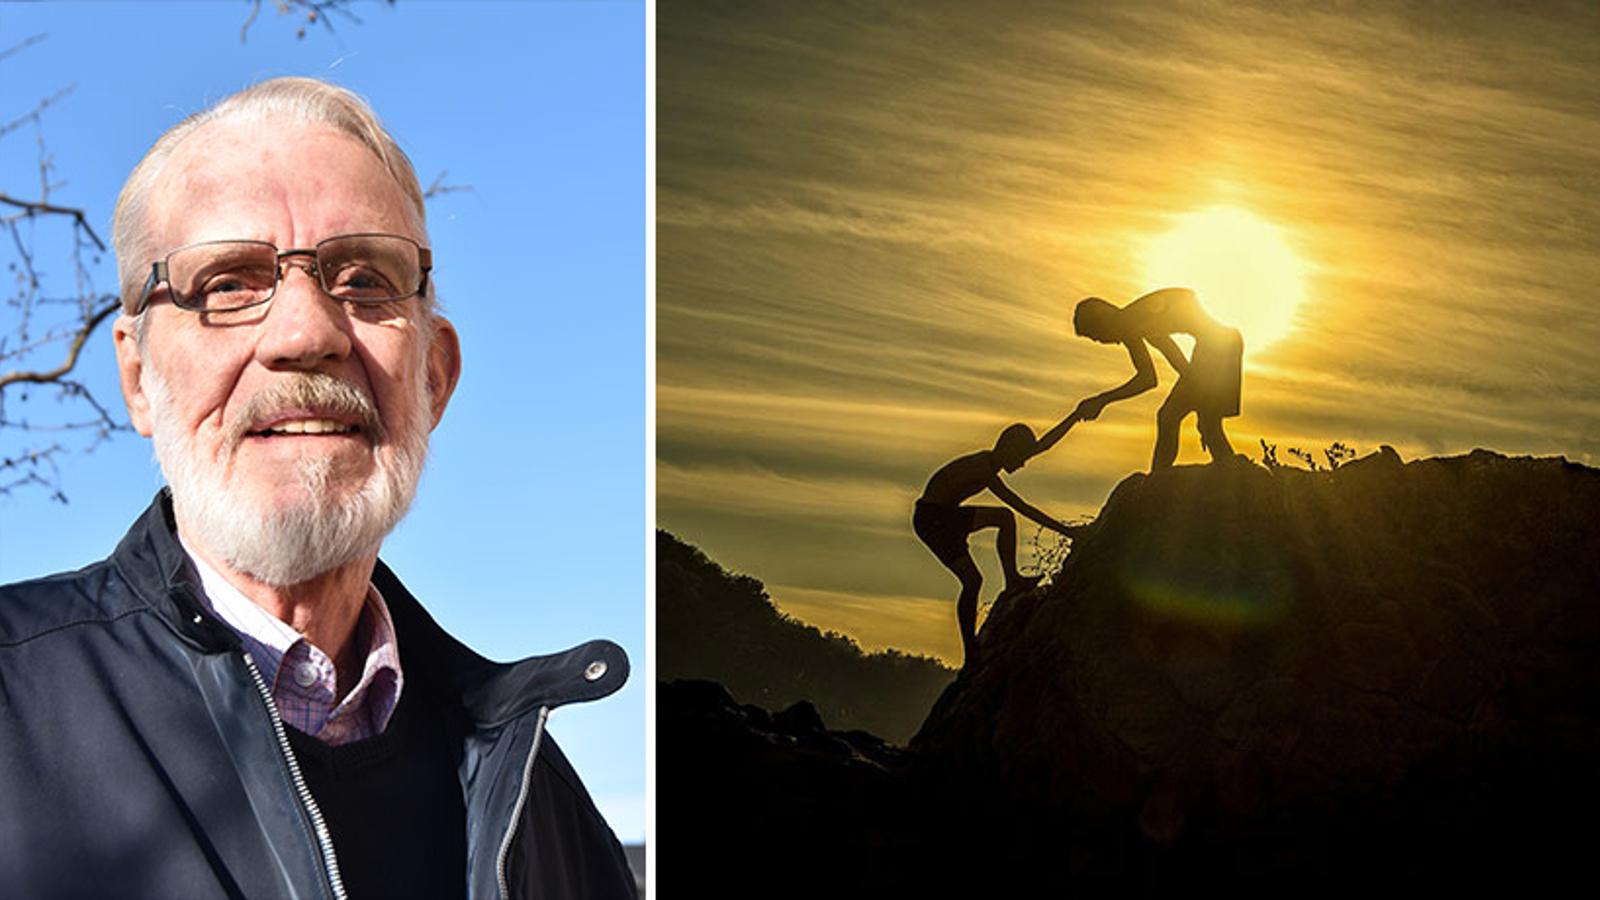 Till vänster: Porträttbild av Jerker Lindén. Till höger: En person som får hjälp upp för ett berg av en annan person, och med en solnedgång i bakgrunden.